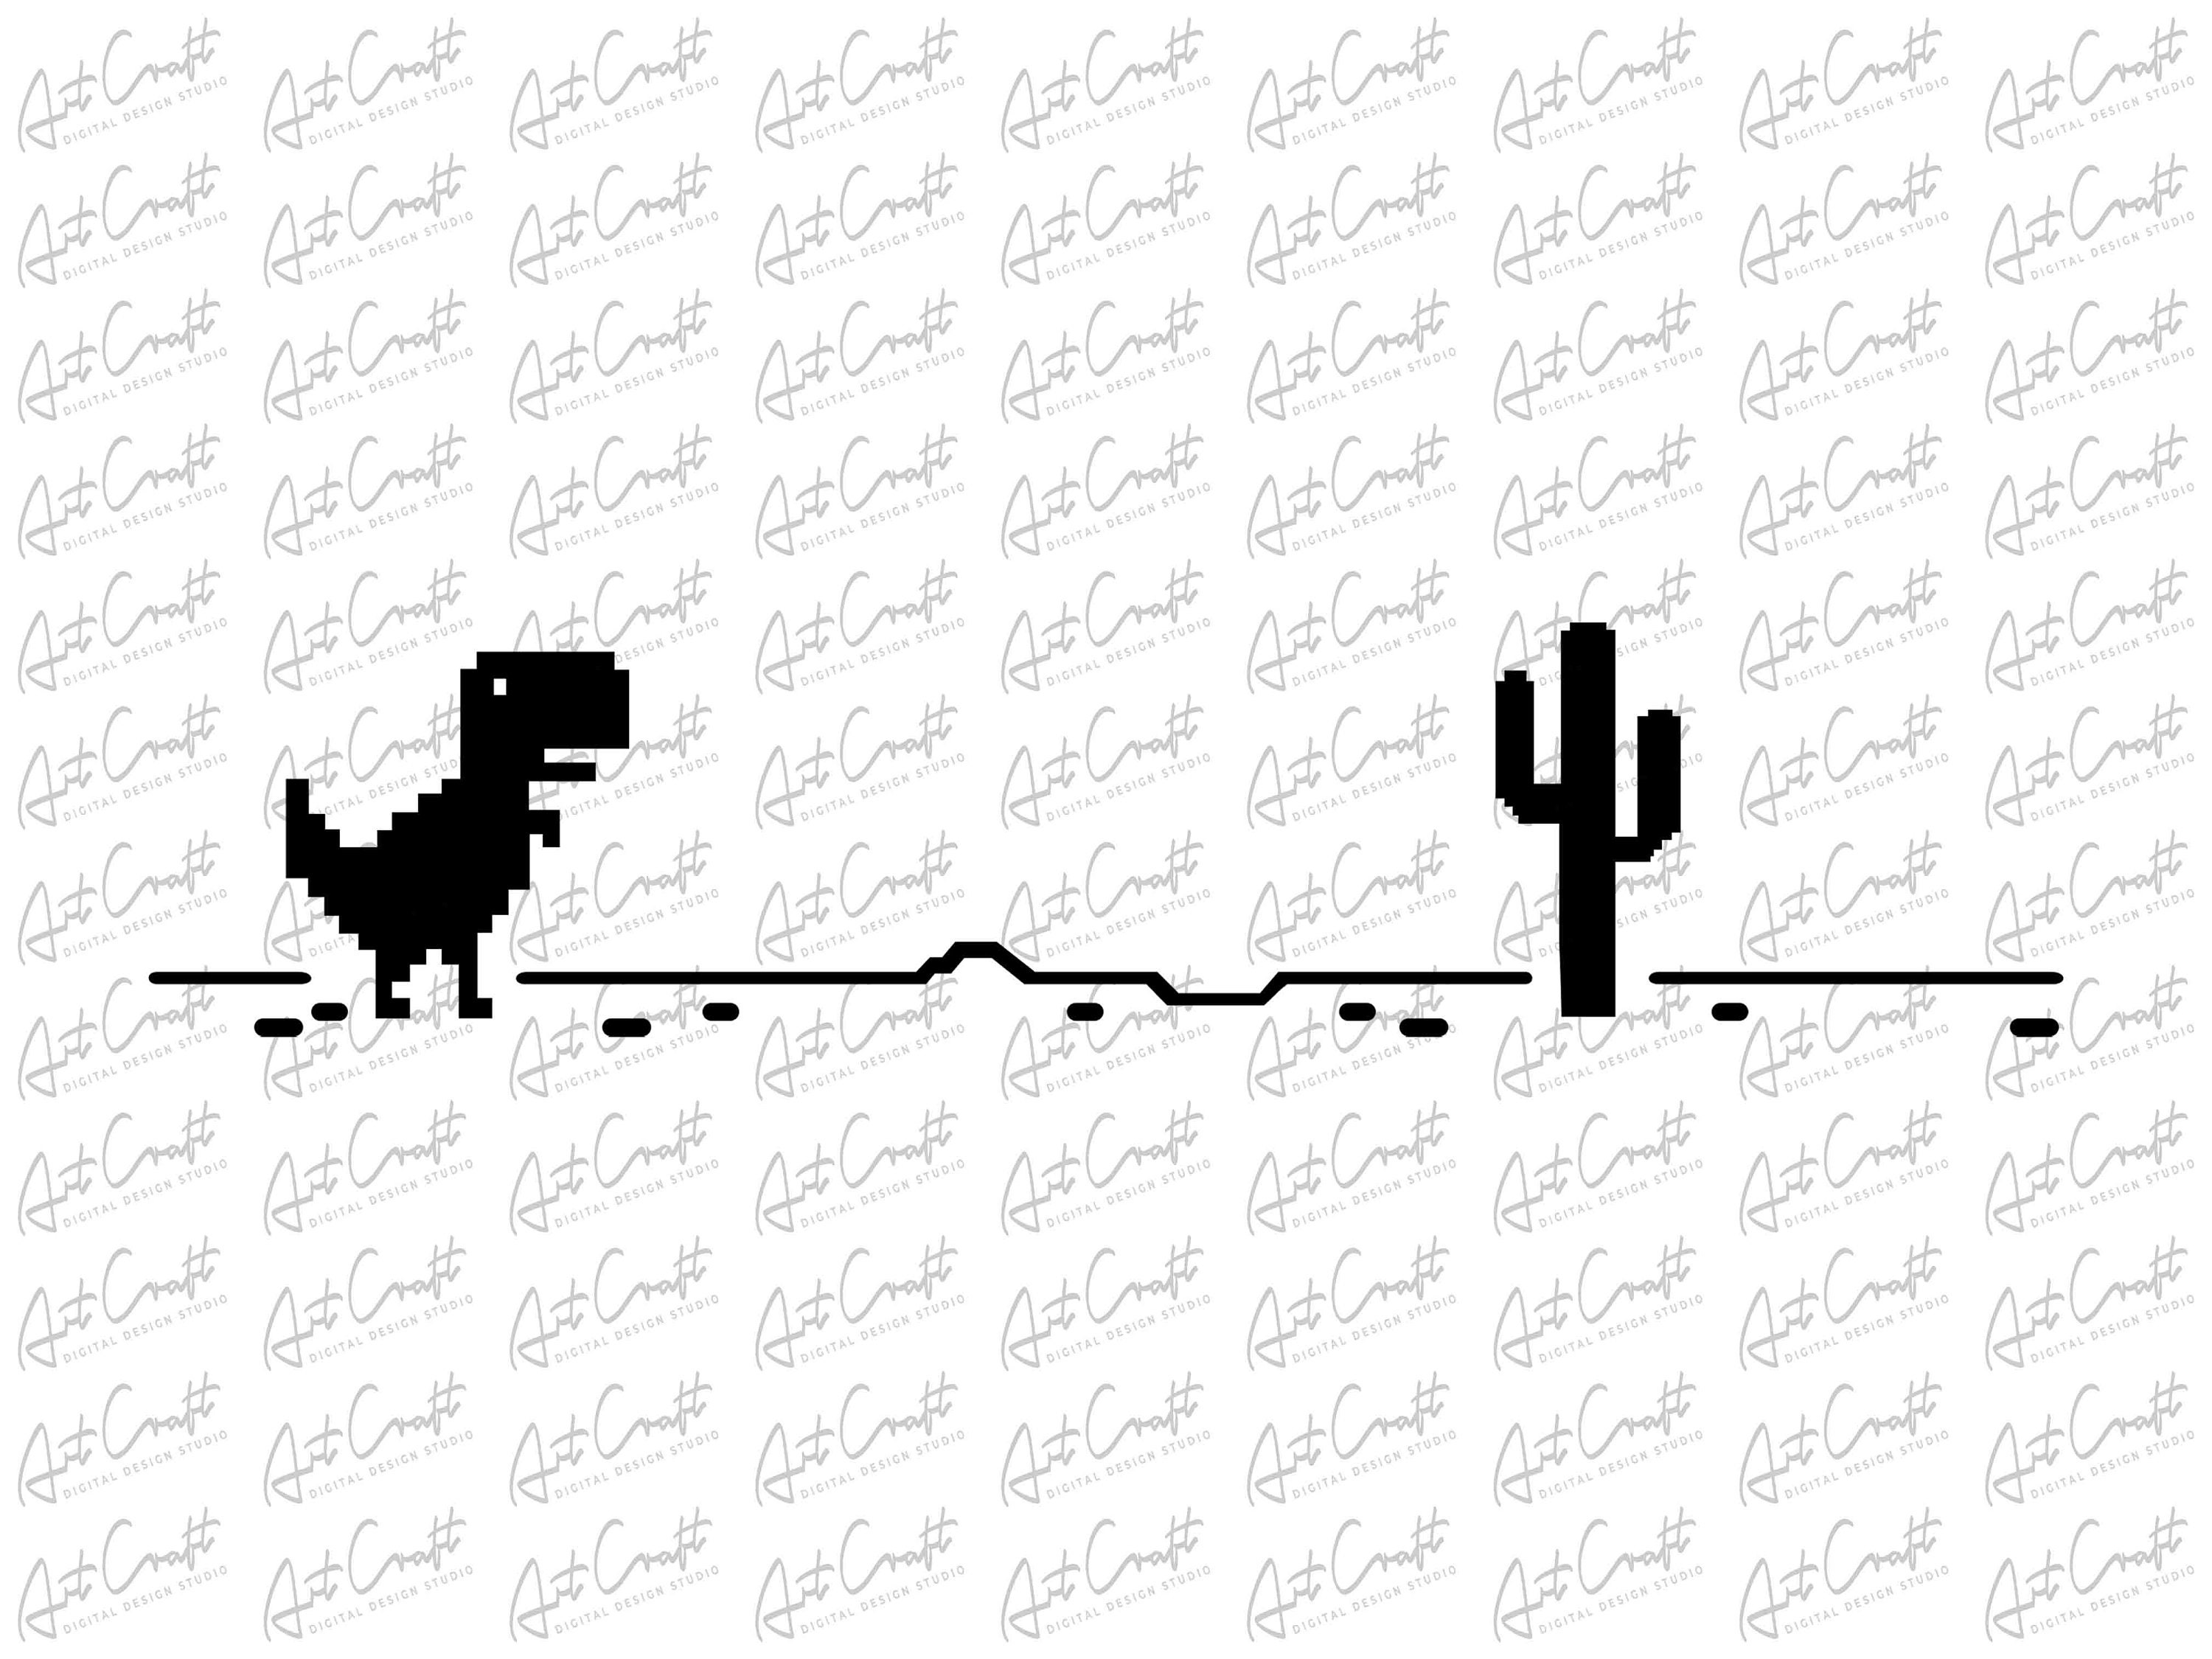 Trex cactus dinossauro sem internet jogo broche pinos esmalte metal  emblemas lapela pino broches jaquetas moda